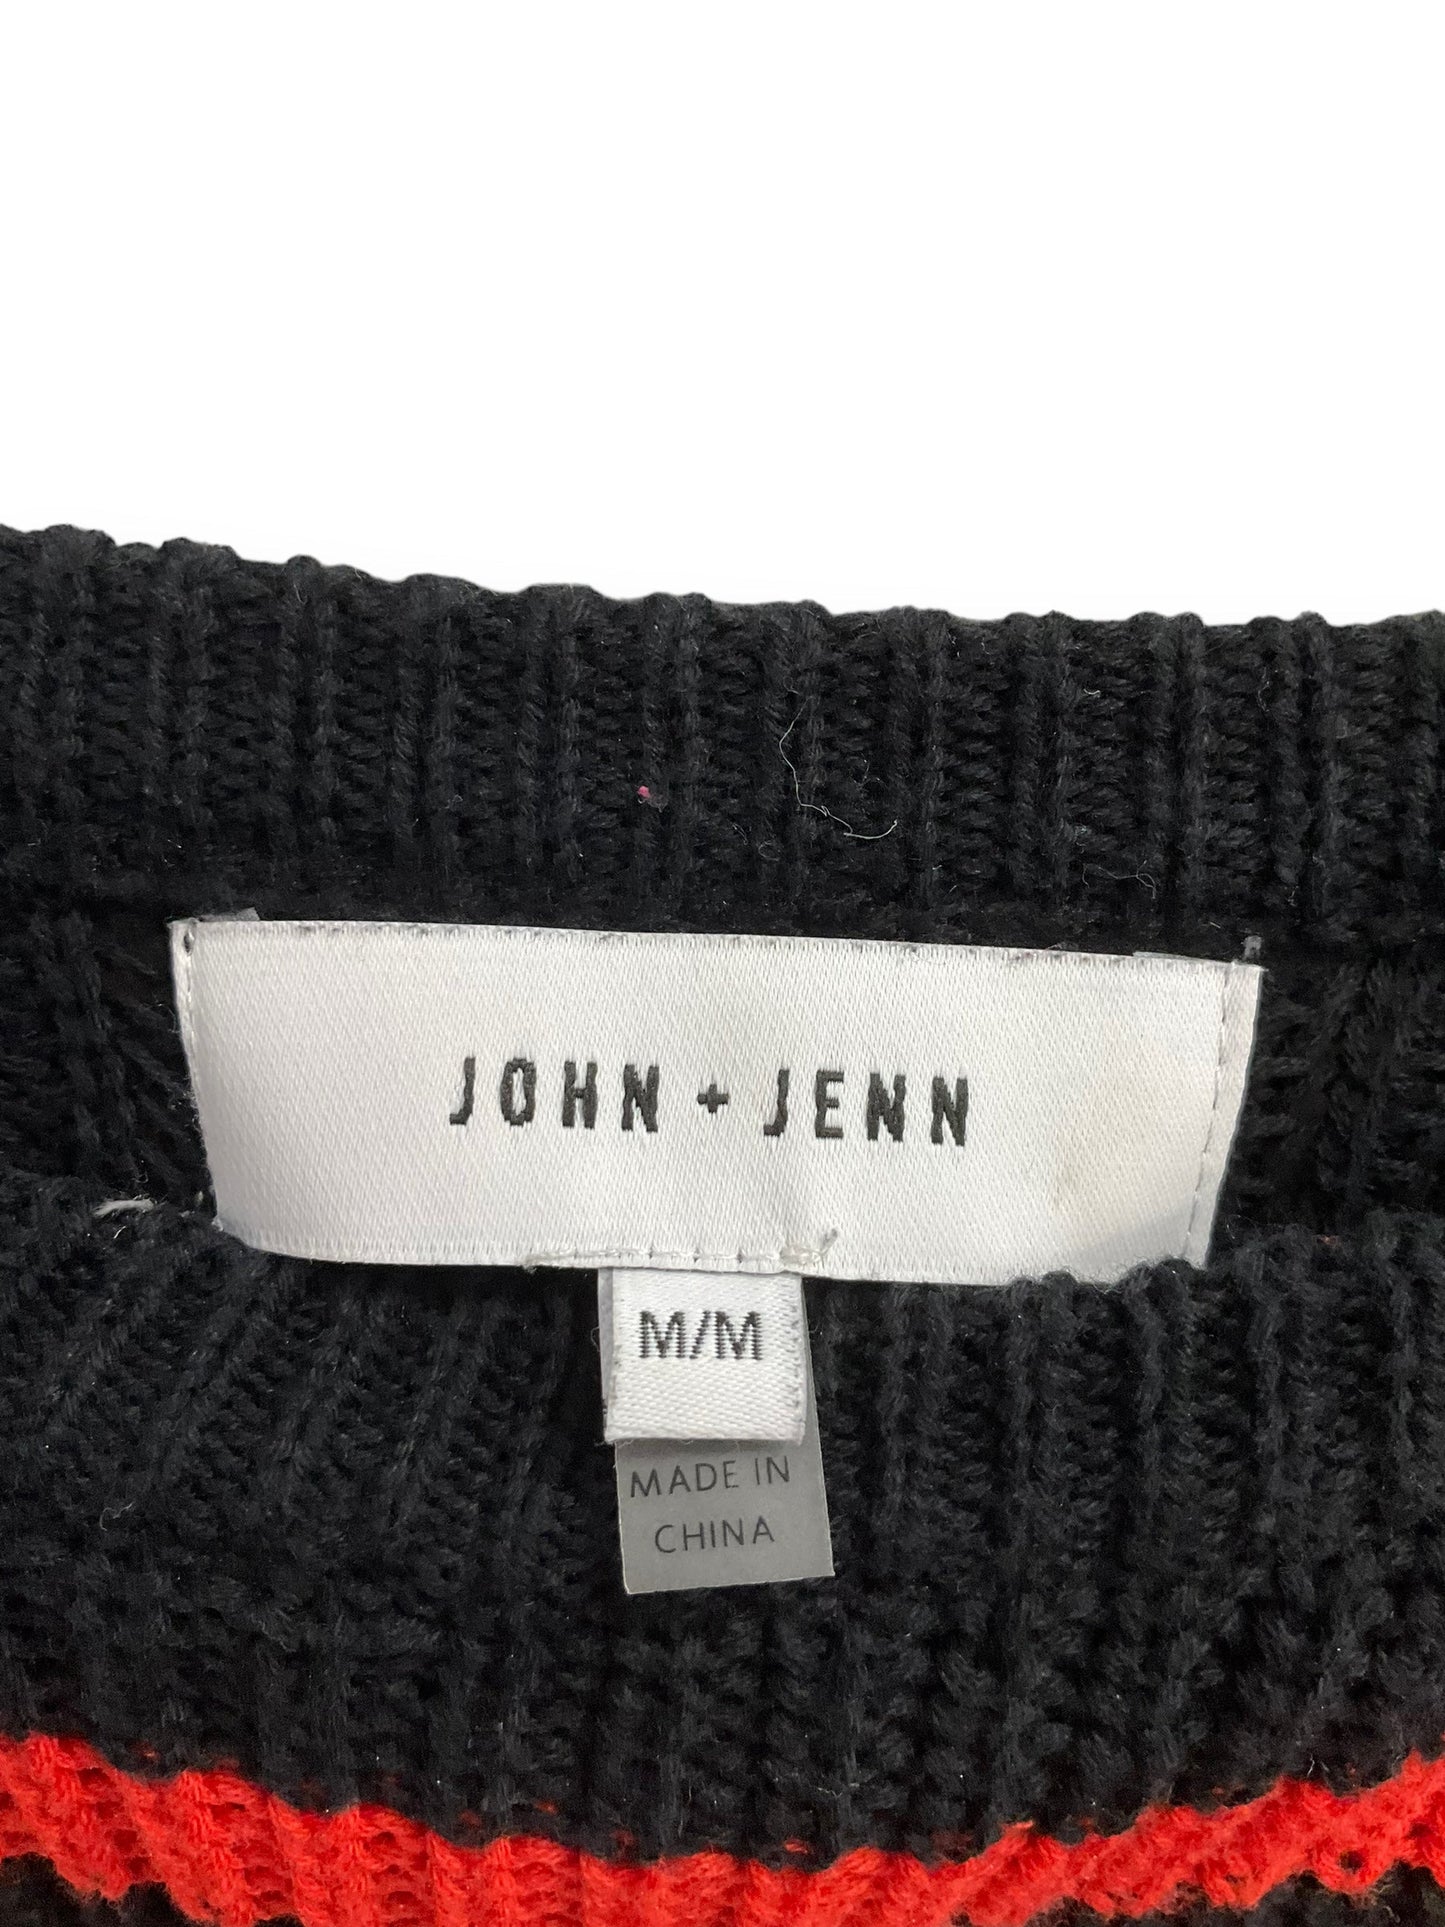 Sweater By John + Jenn  Size: M